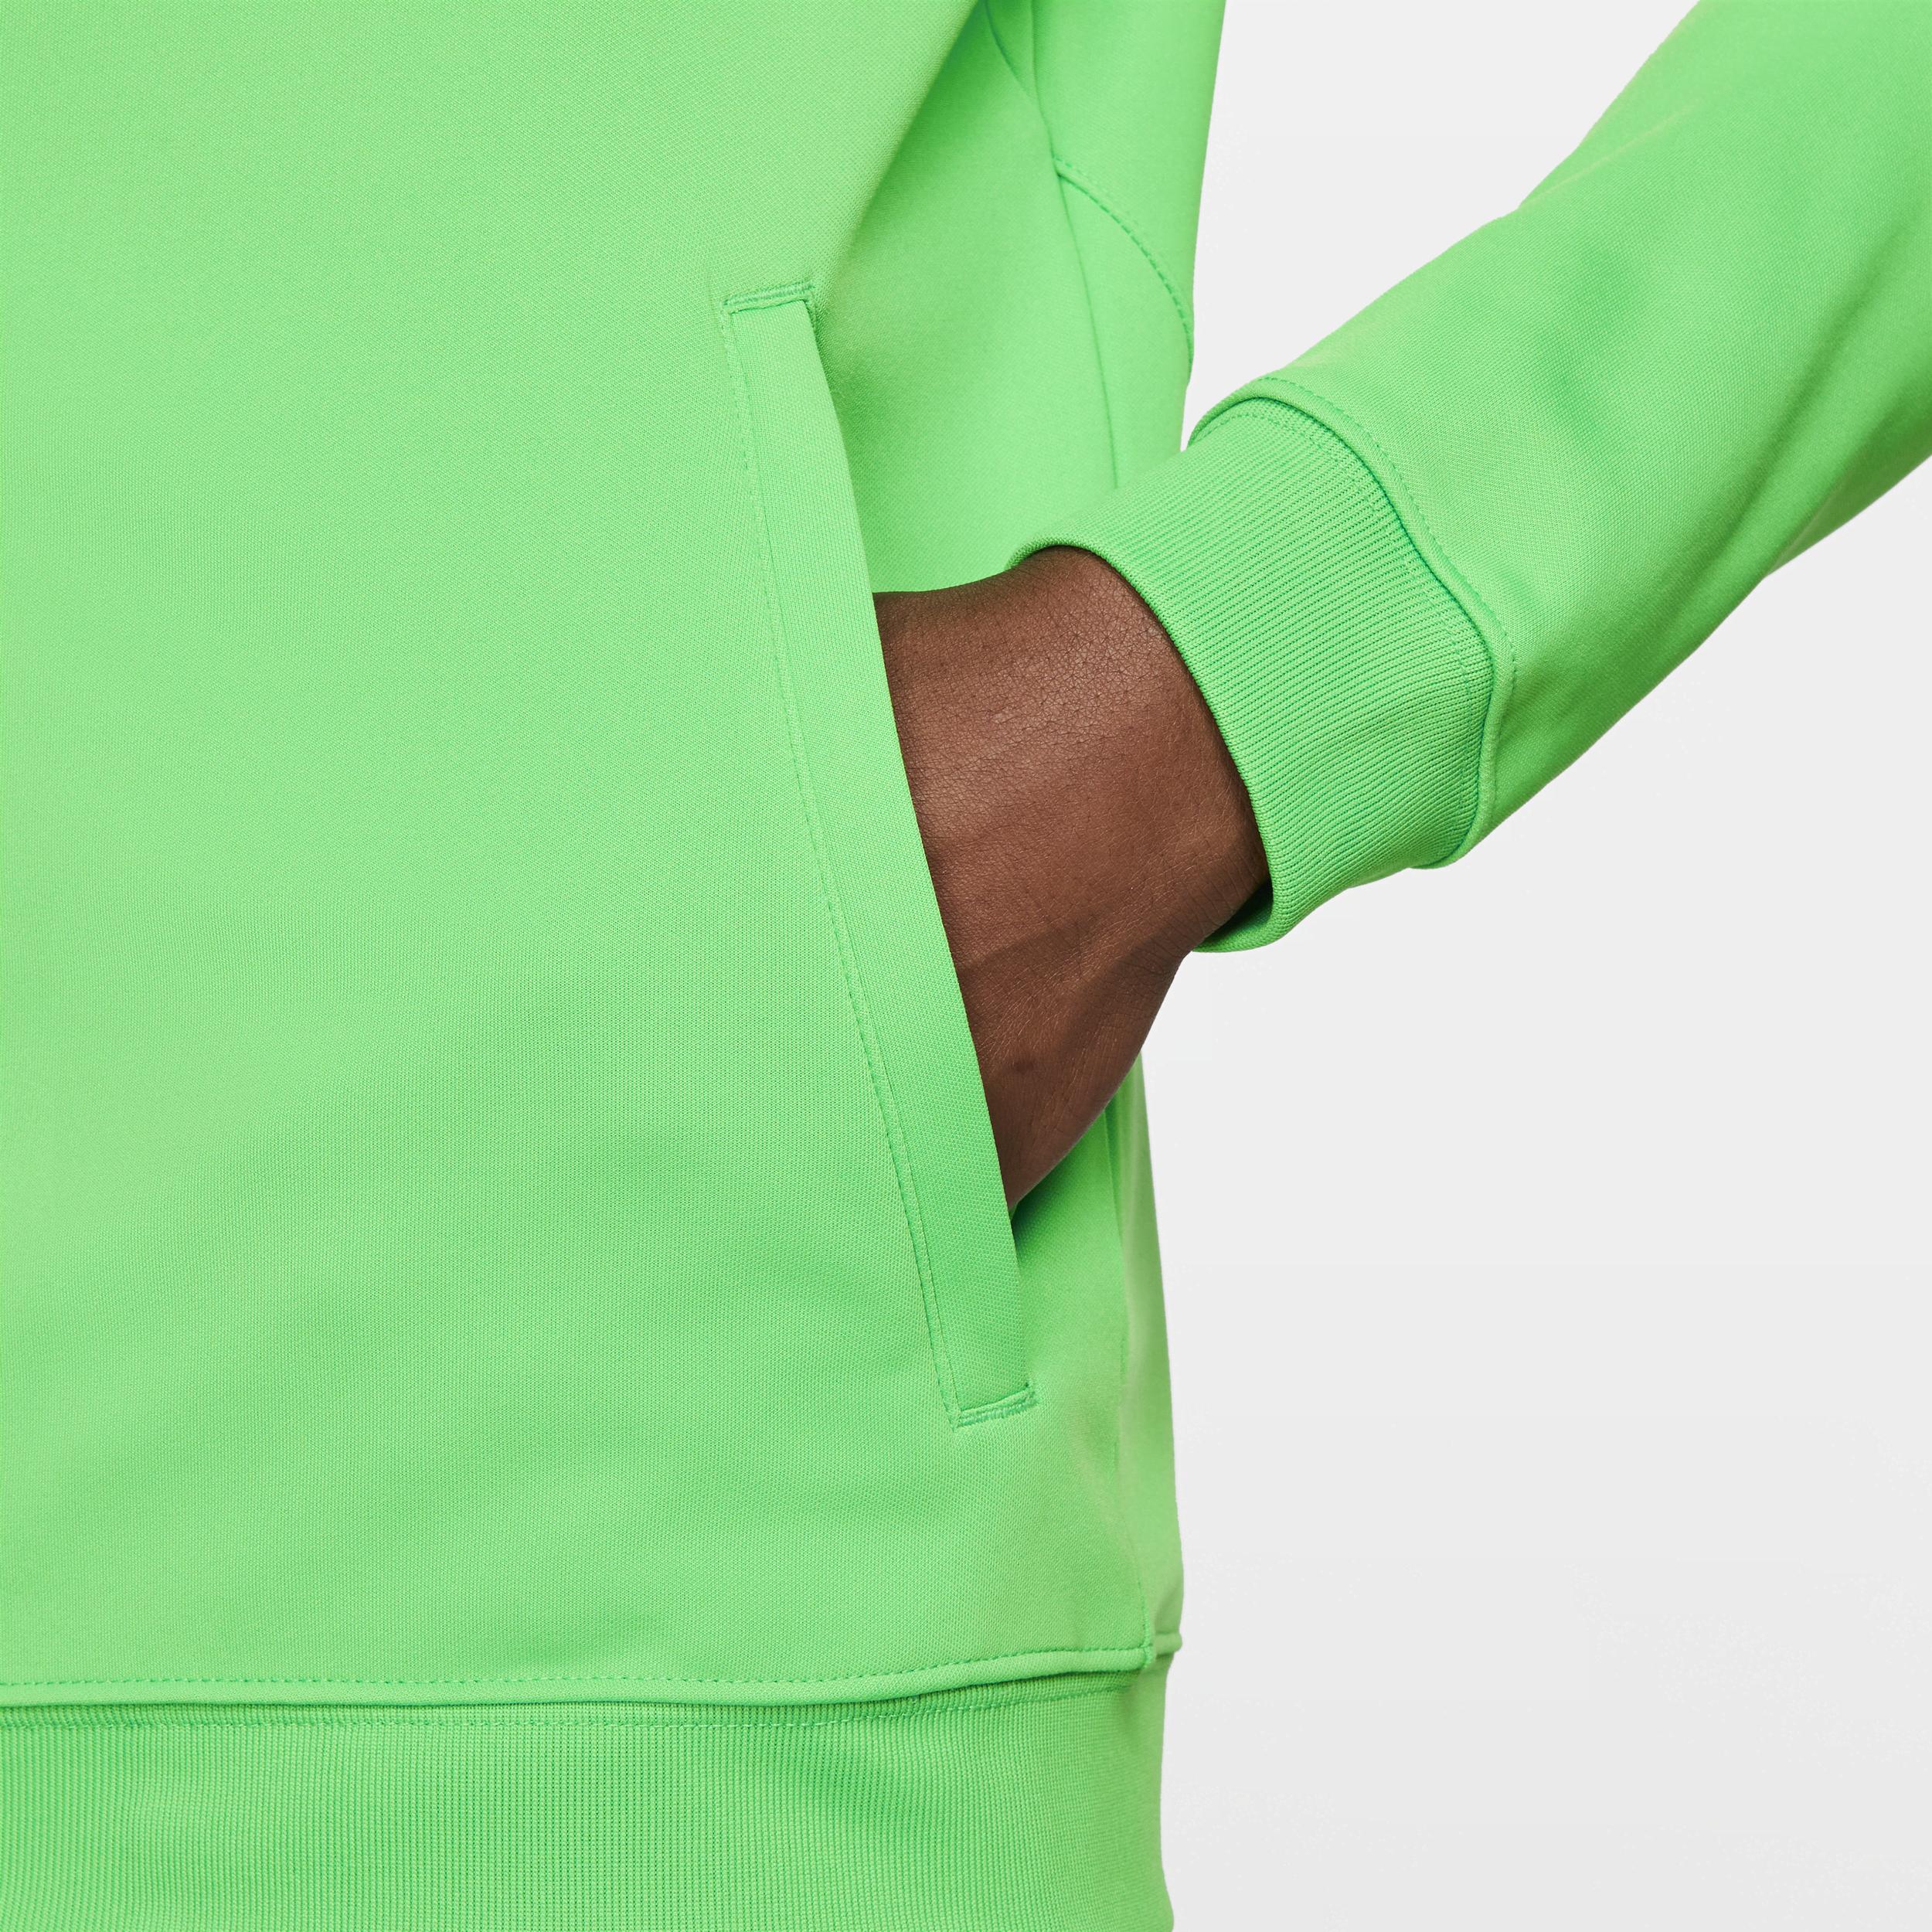 Nike Brazil Academy Pro Knit Soccer Jacket In Green, for Men | Lyst